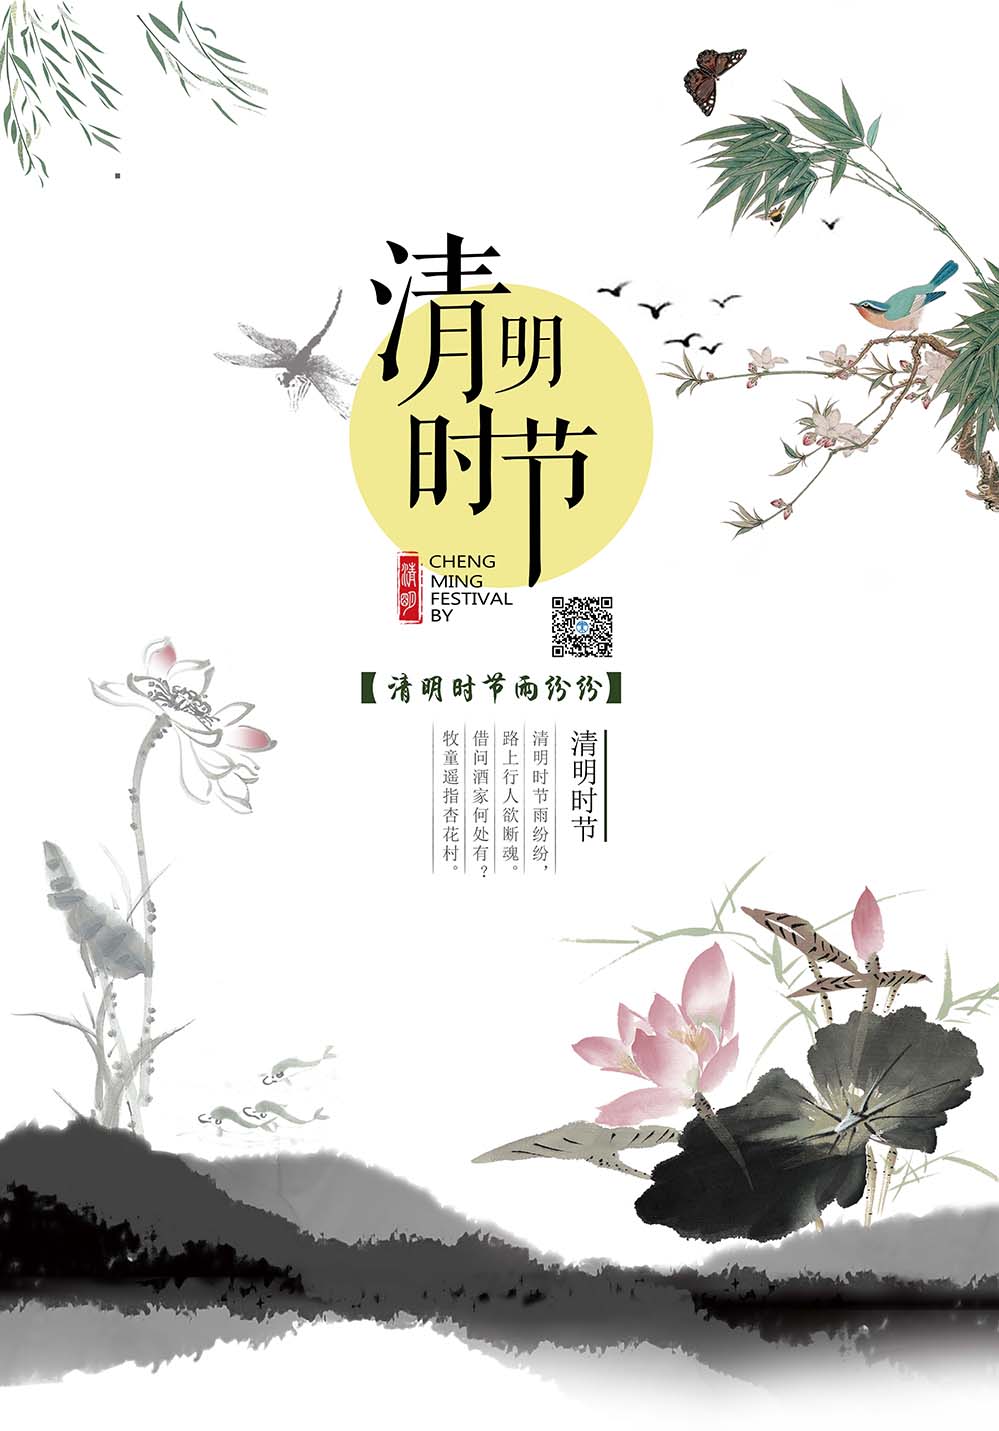 清明节中国风水墨风格海报设计PSD源文件